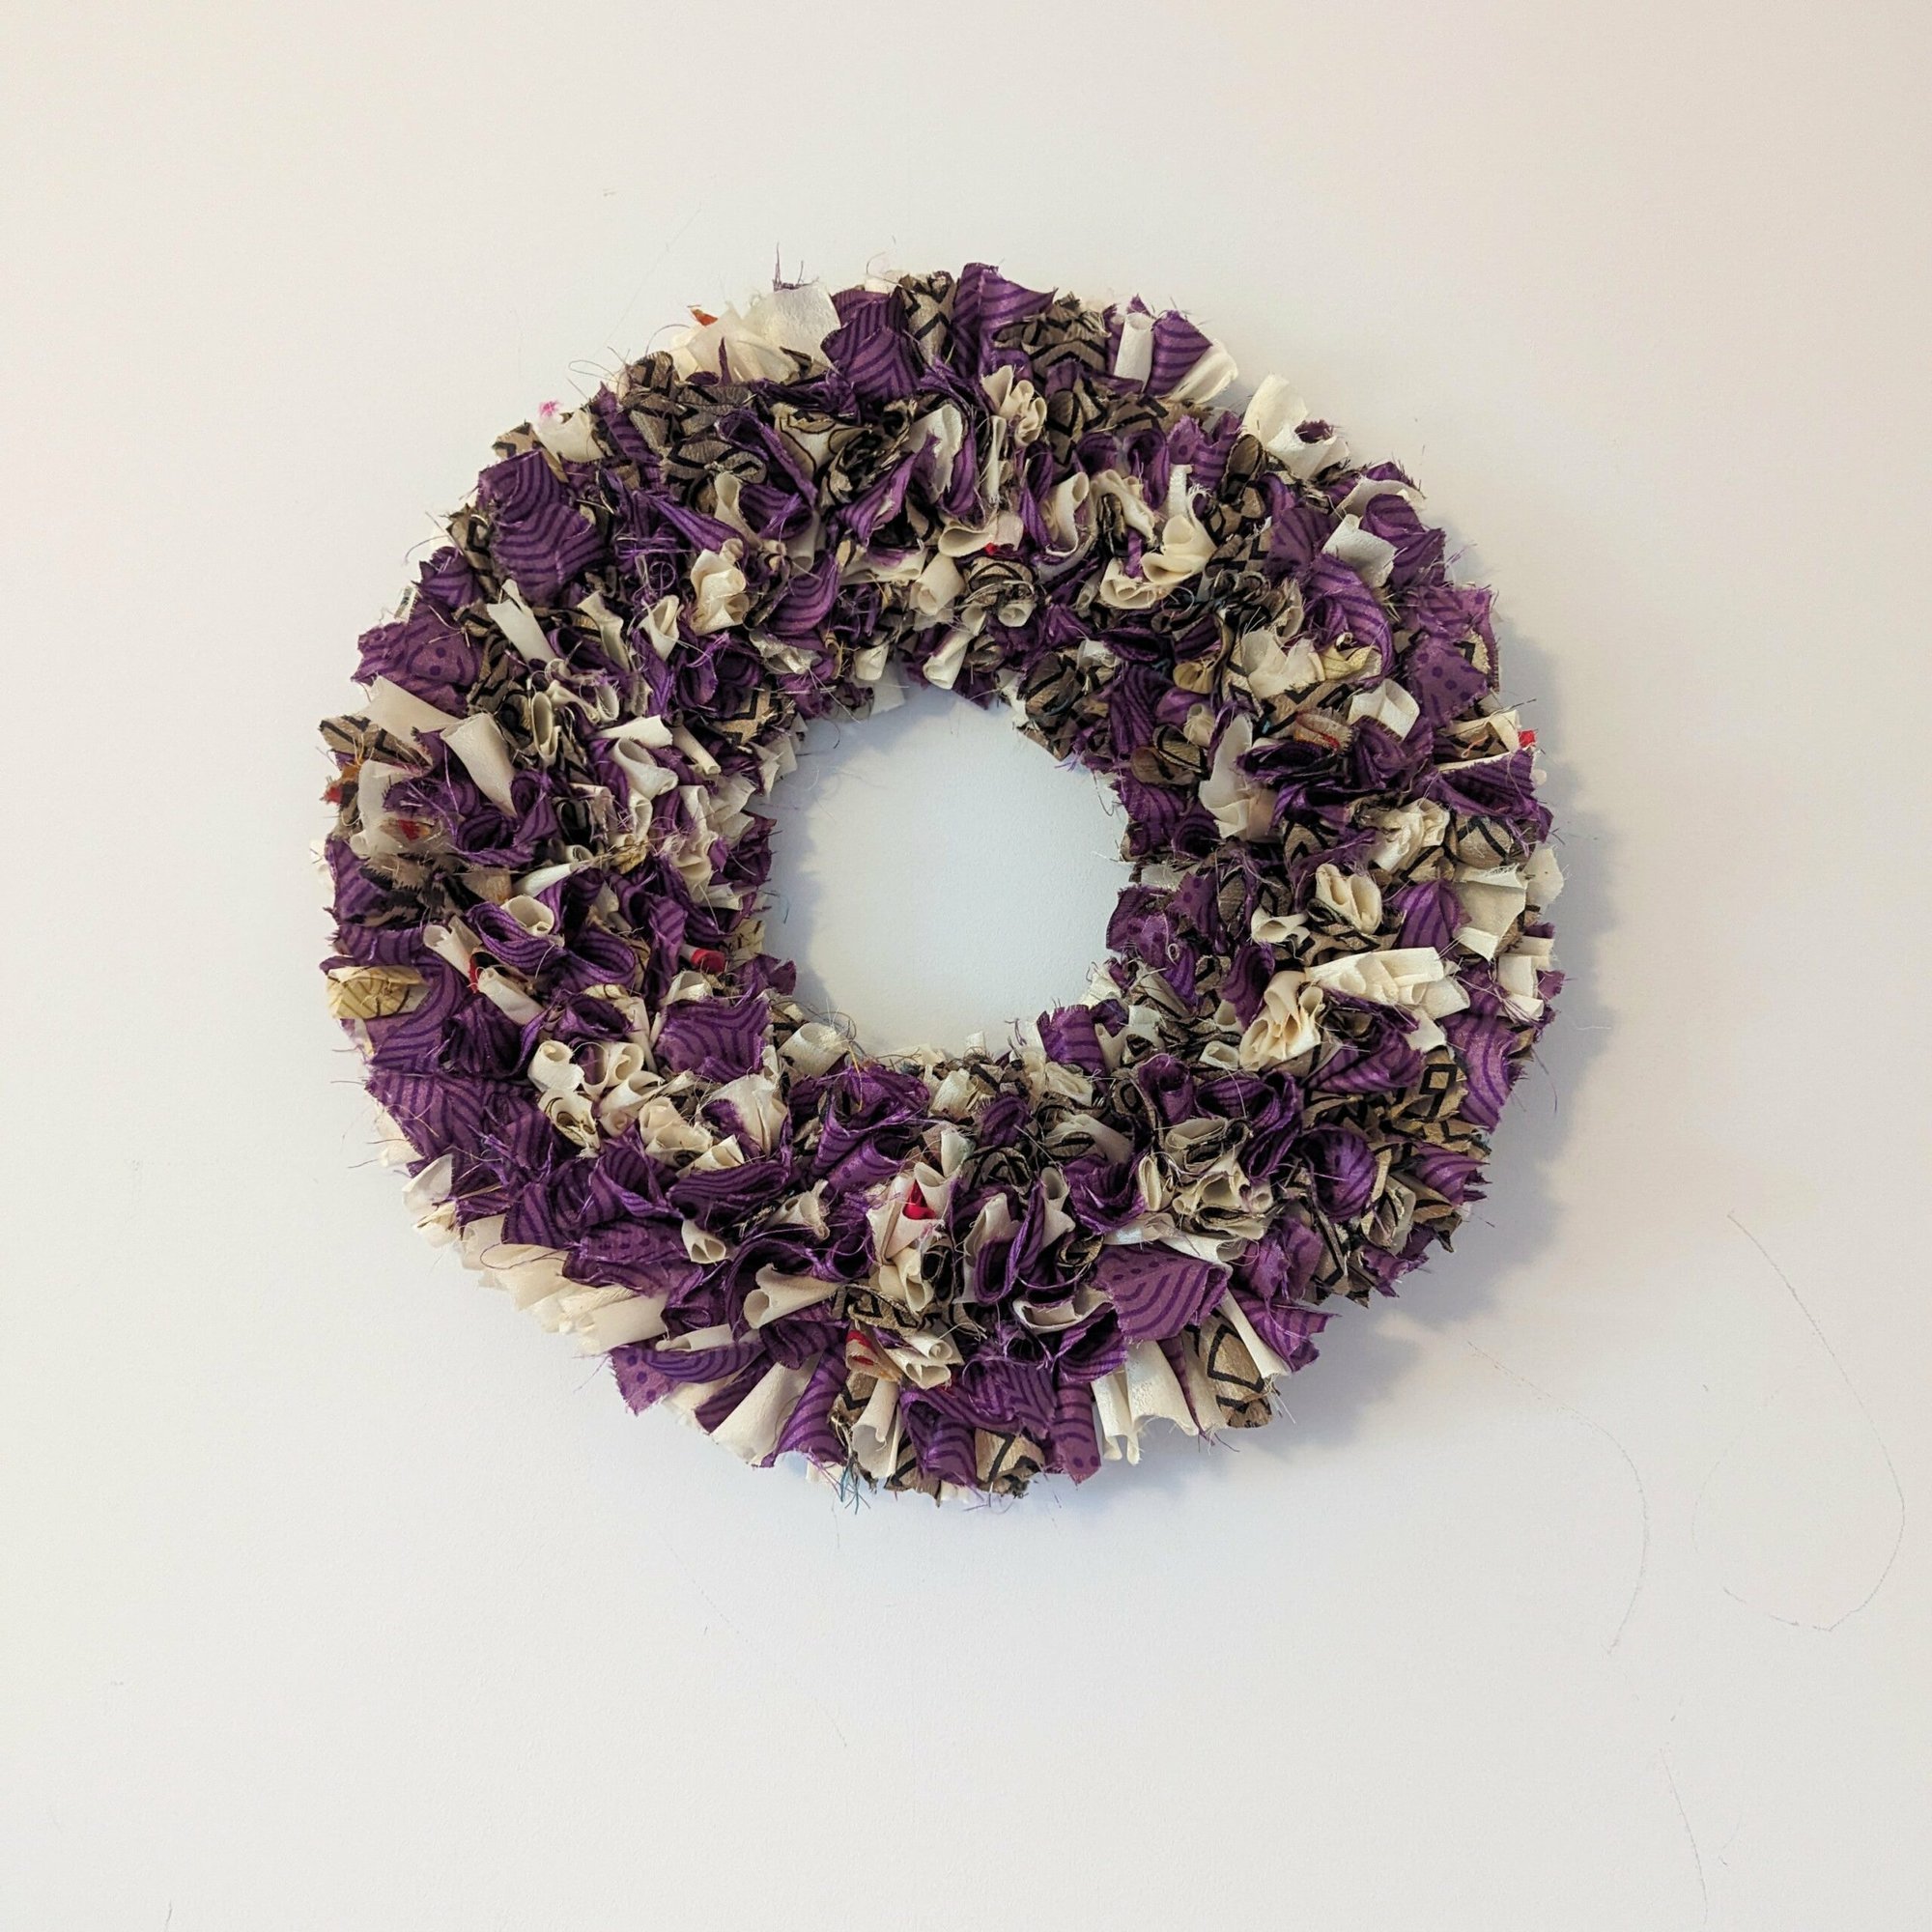 Handmade Upcycled Sari Rag Wreath - Shraya grape